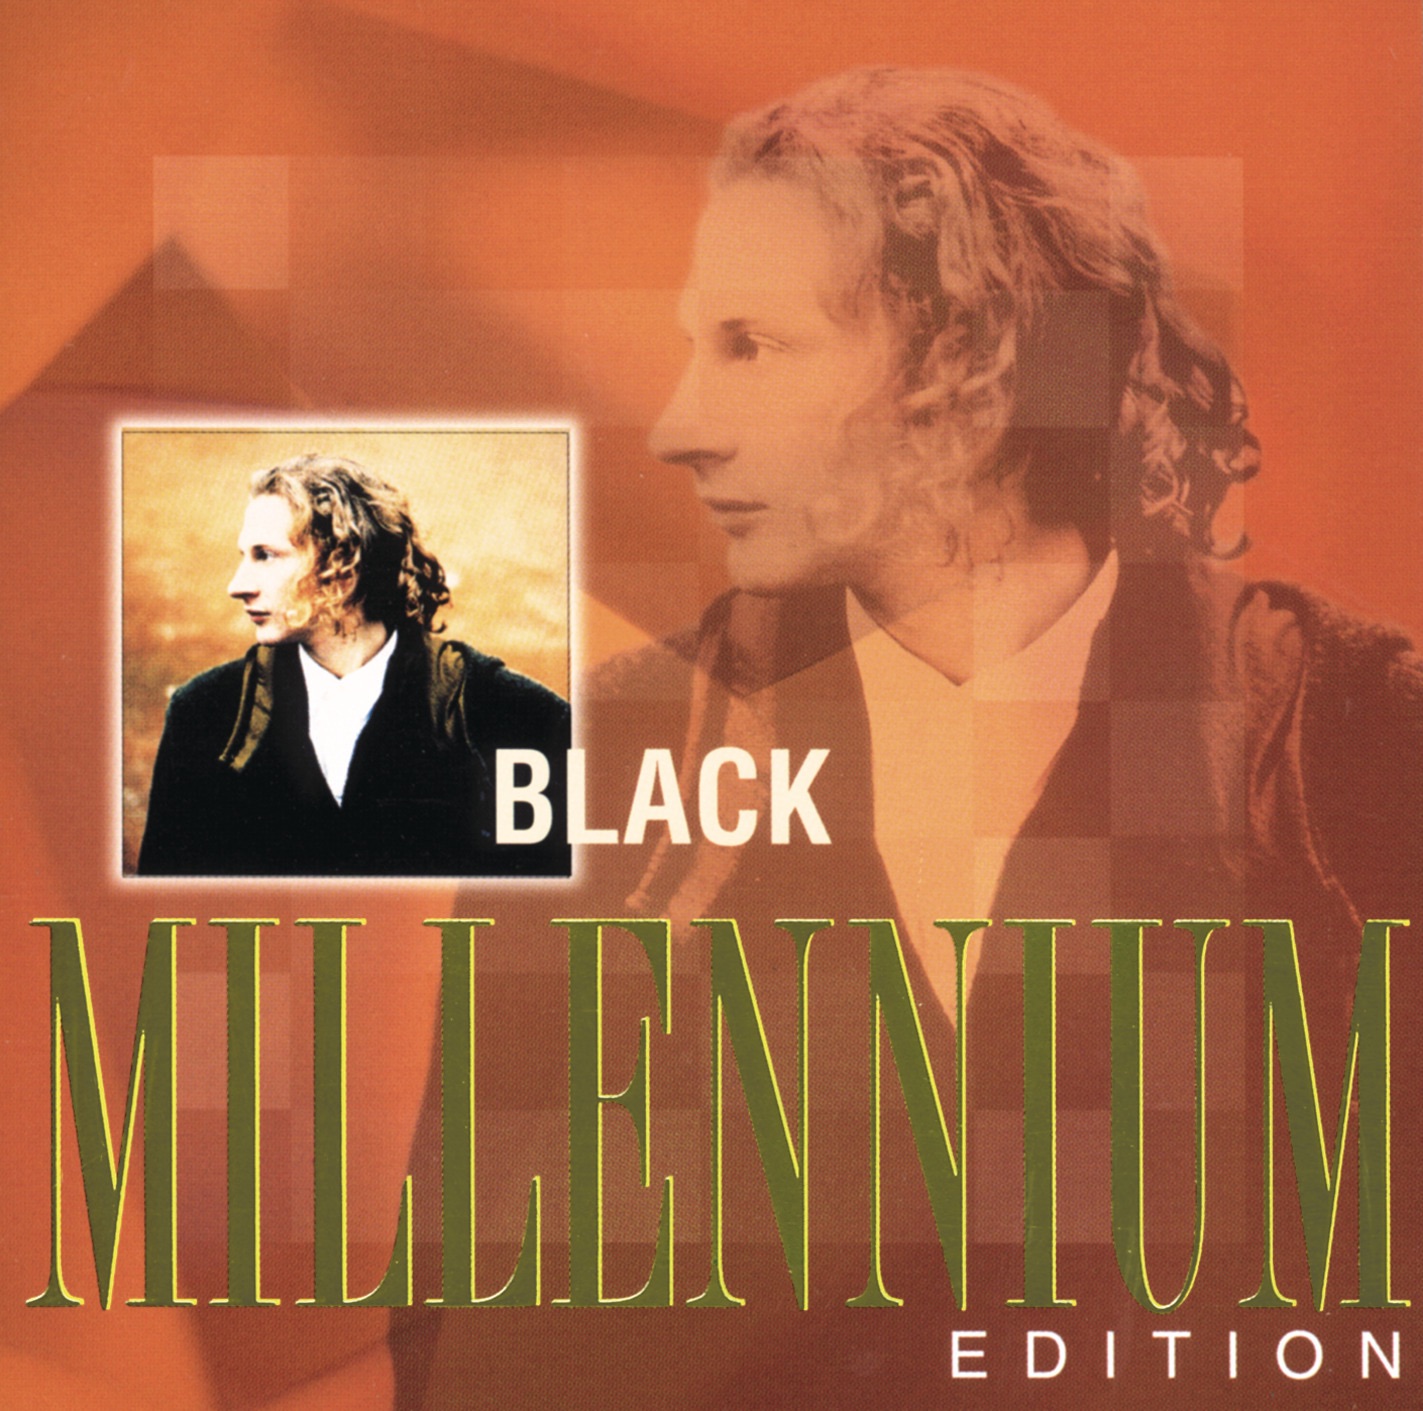 Wonderful life. Millennium 2000 песня. Альбом Миллениум какая группа выпускала. Картинка Миллениум альбом. Millennium mp3 слушать альбом.